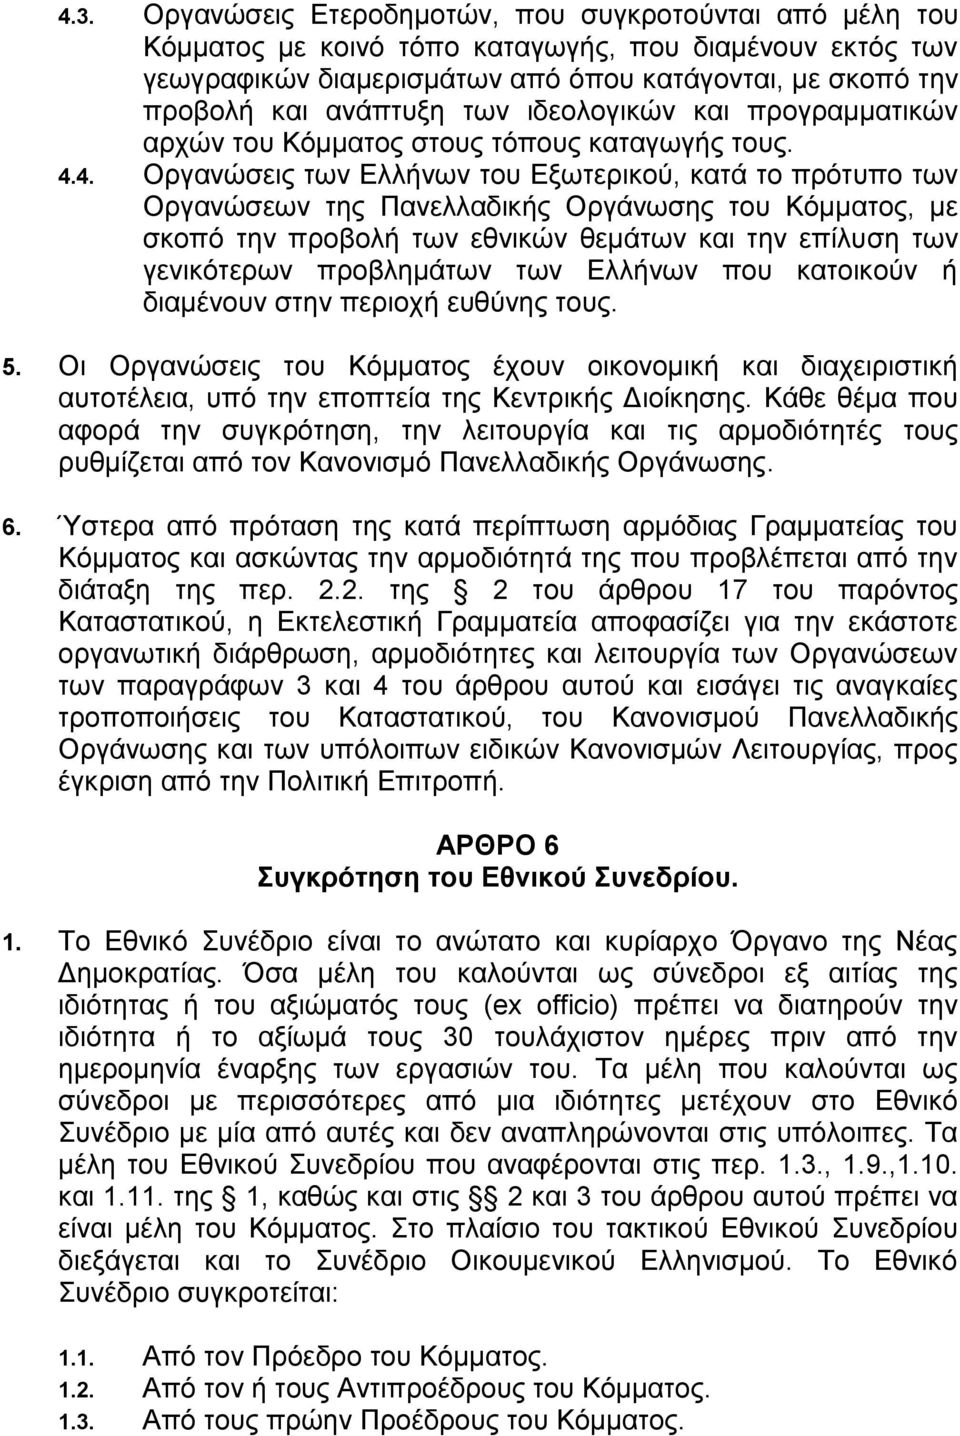 4. Οργανώσεις των Ελλήνων του Εξωτερικού, κατά το πρότυπο των Οργανώσεων της Πανελλαδικής Οργάνωσης του Κόμματος, με σκοπό την προβολή των εθνικών θεμάτων και την επίλυση των γενικότερων προβλημάτων